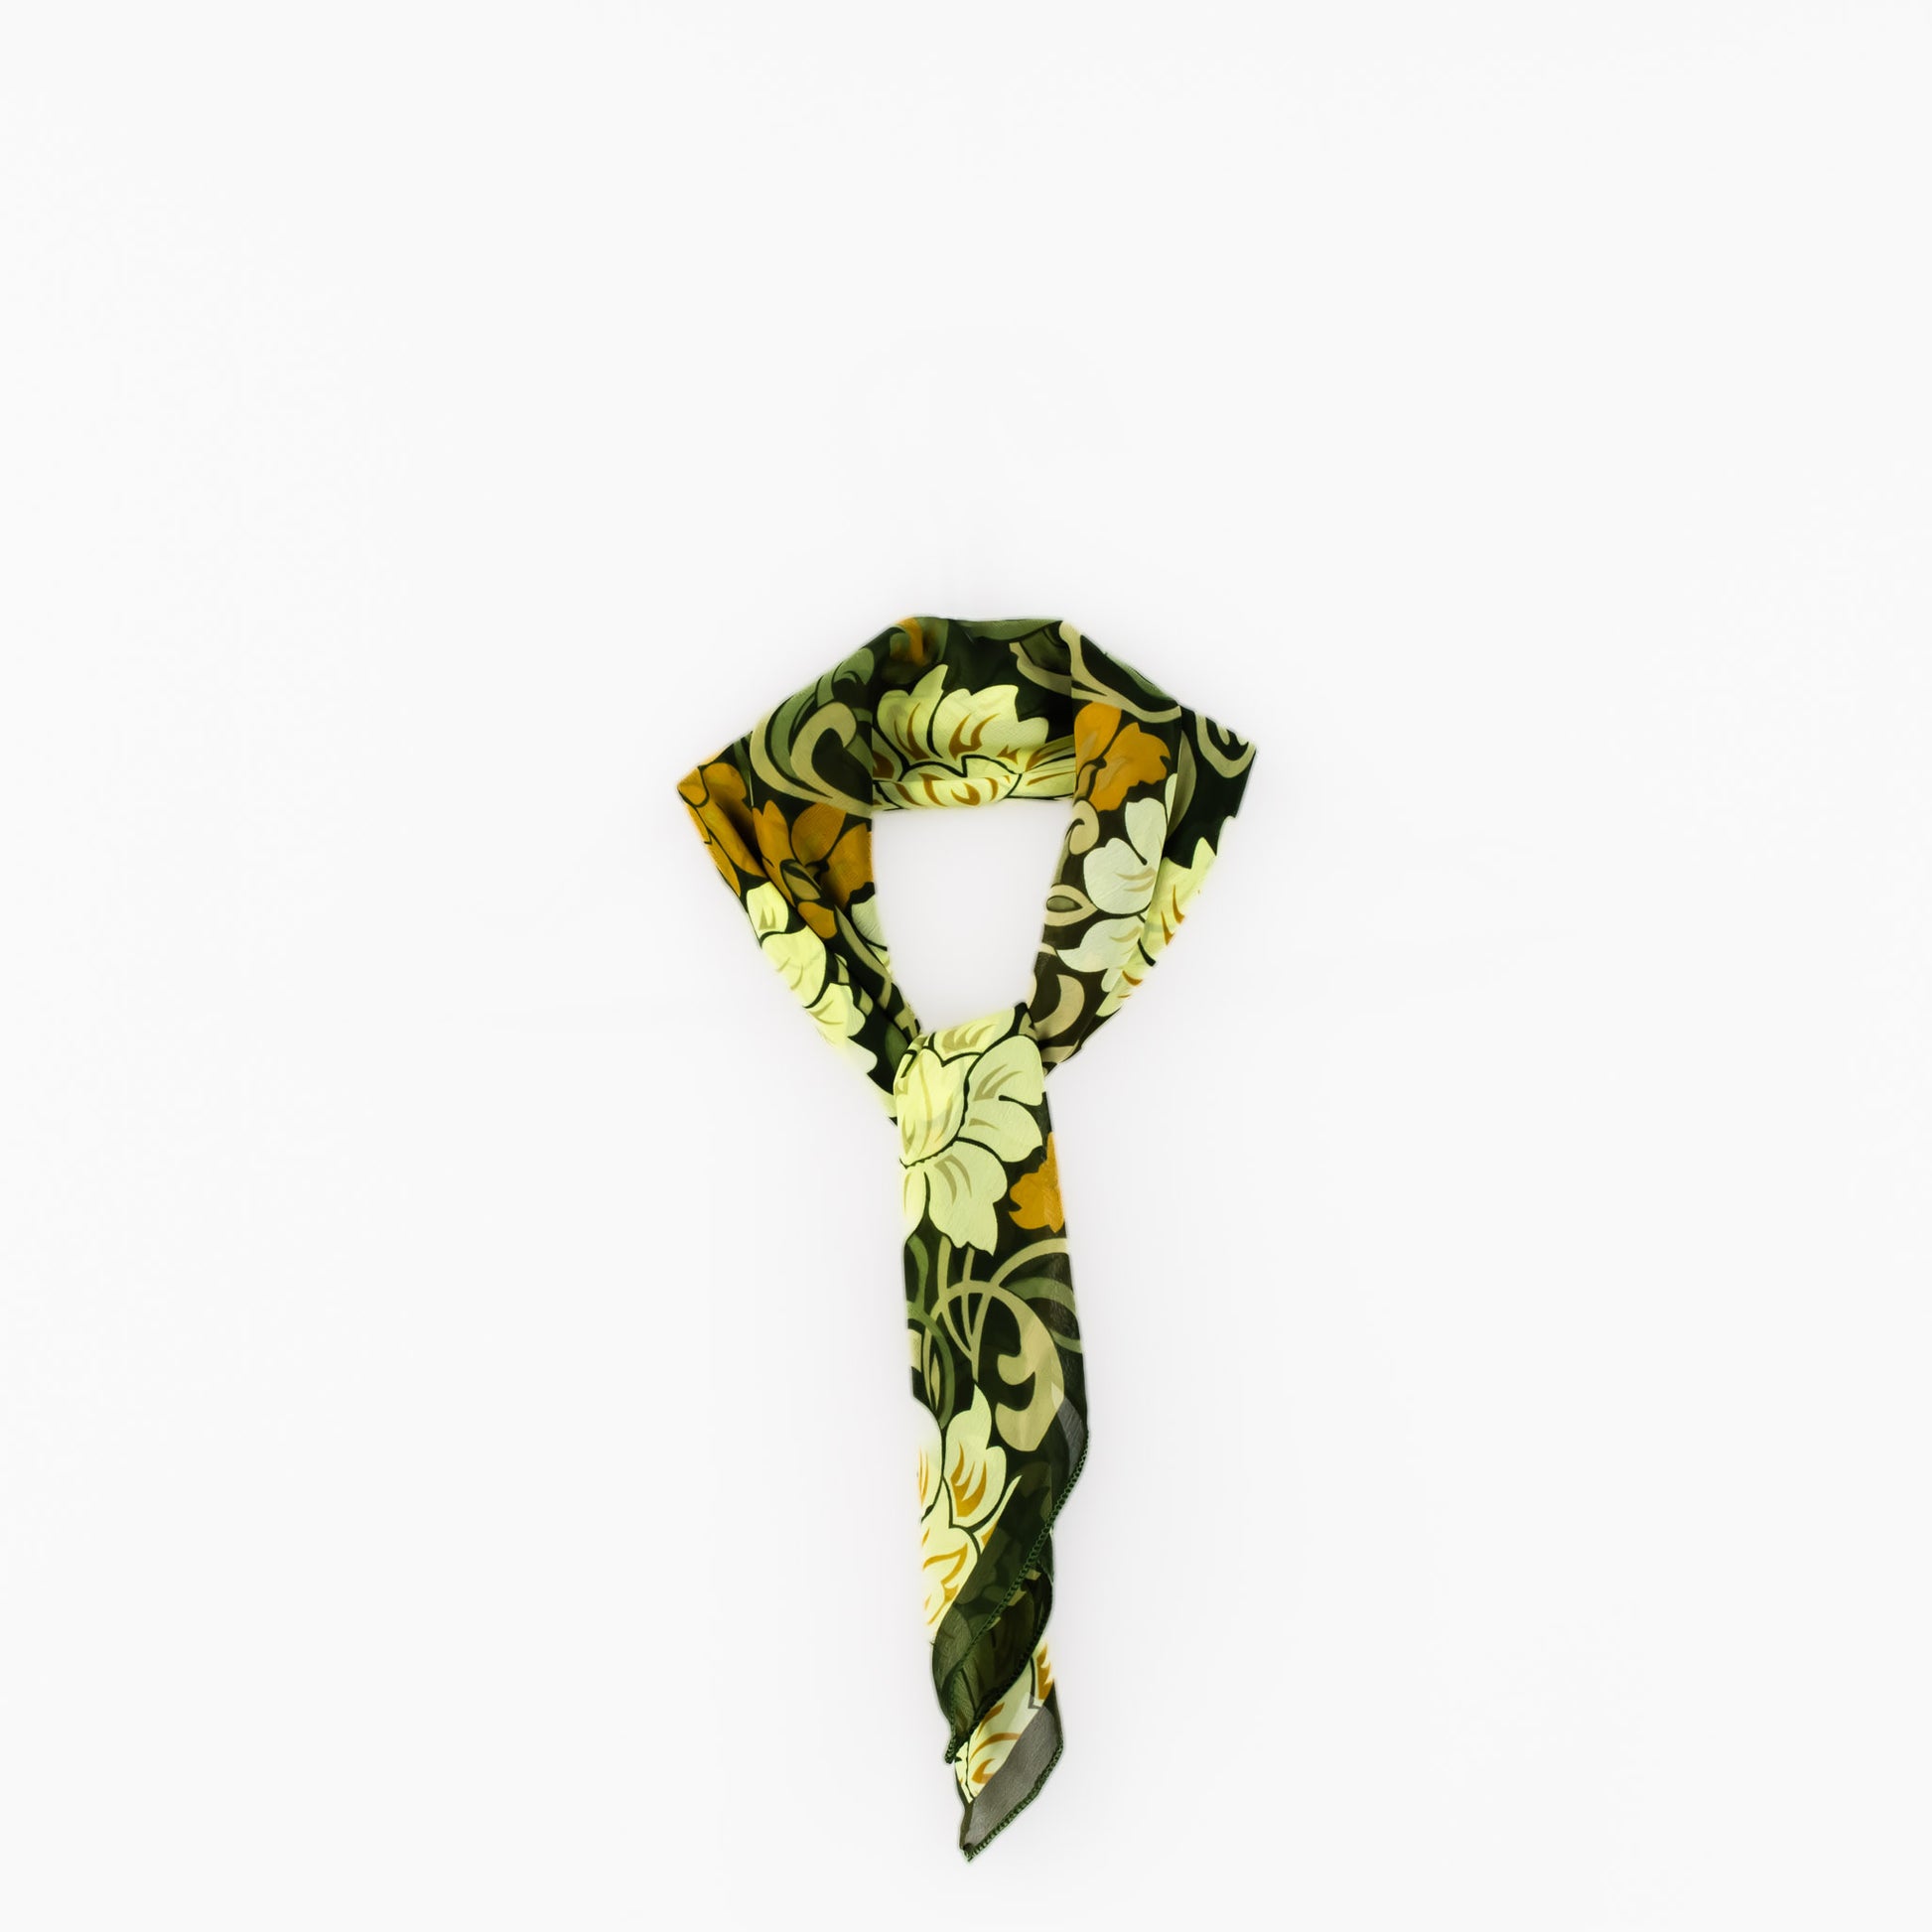 Eșarfă damă din mătase cu imprimeu floral abstract, 65 x 65 cm - Verde